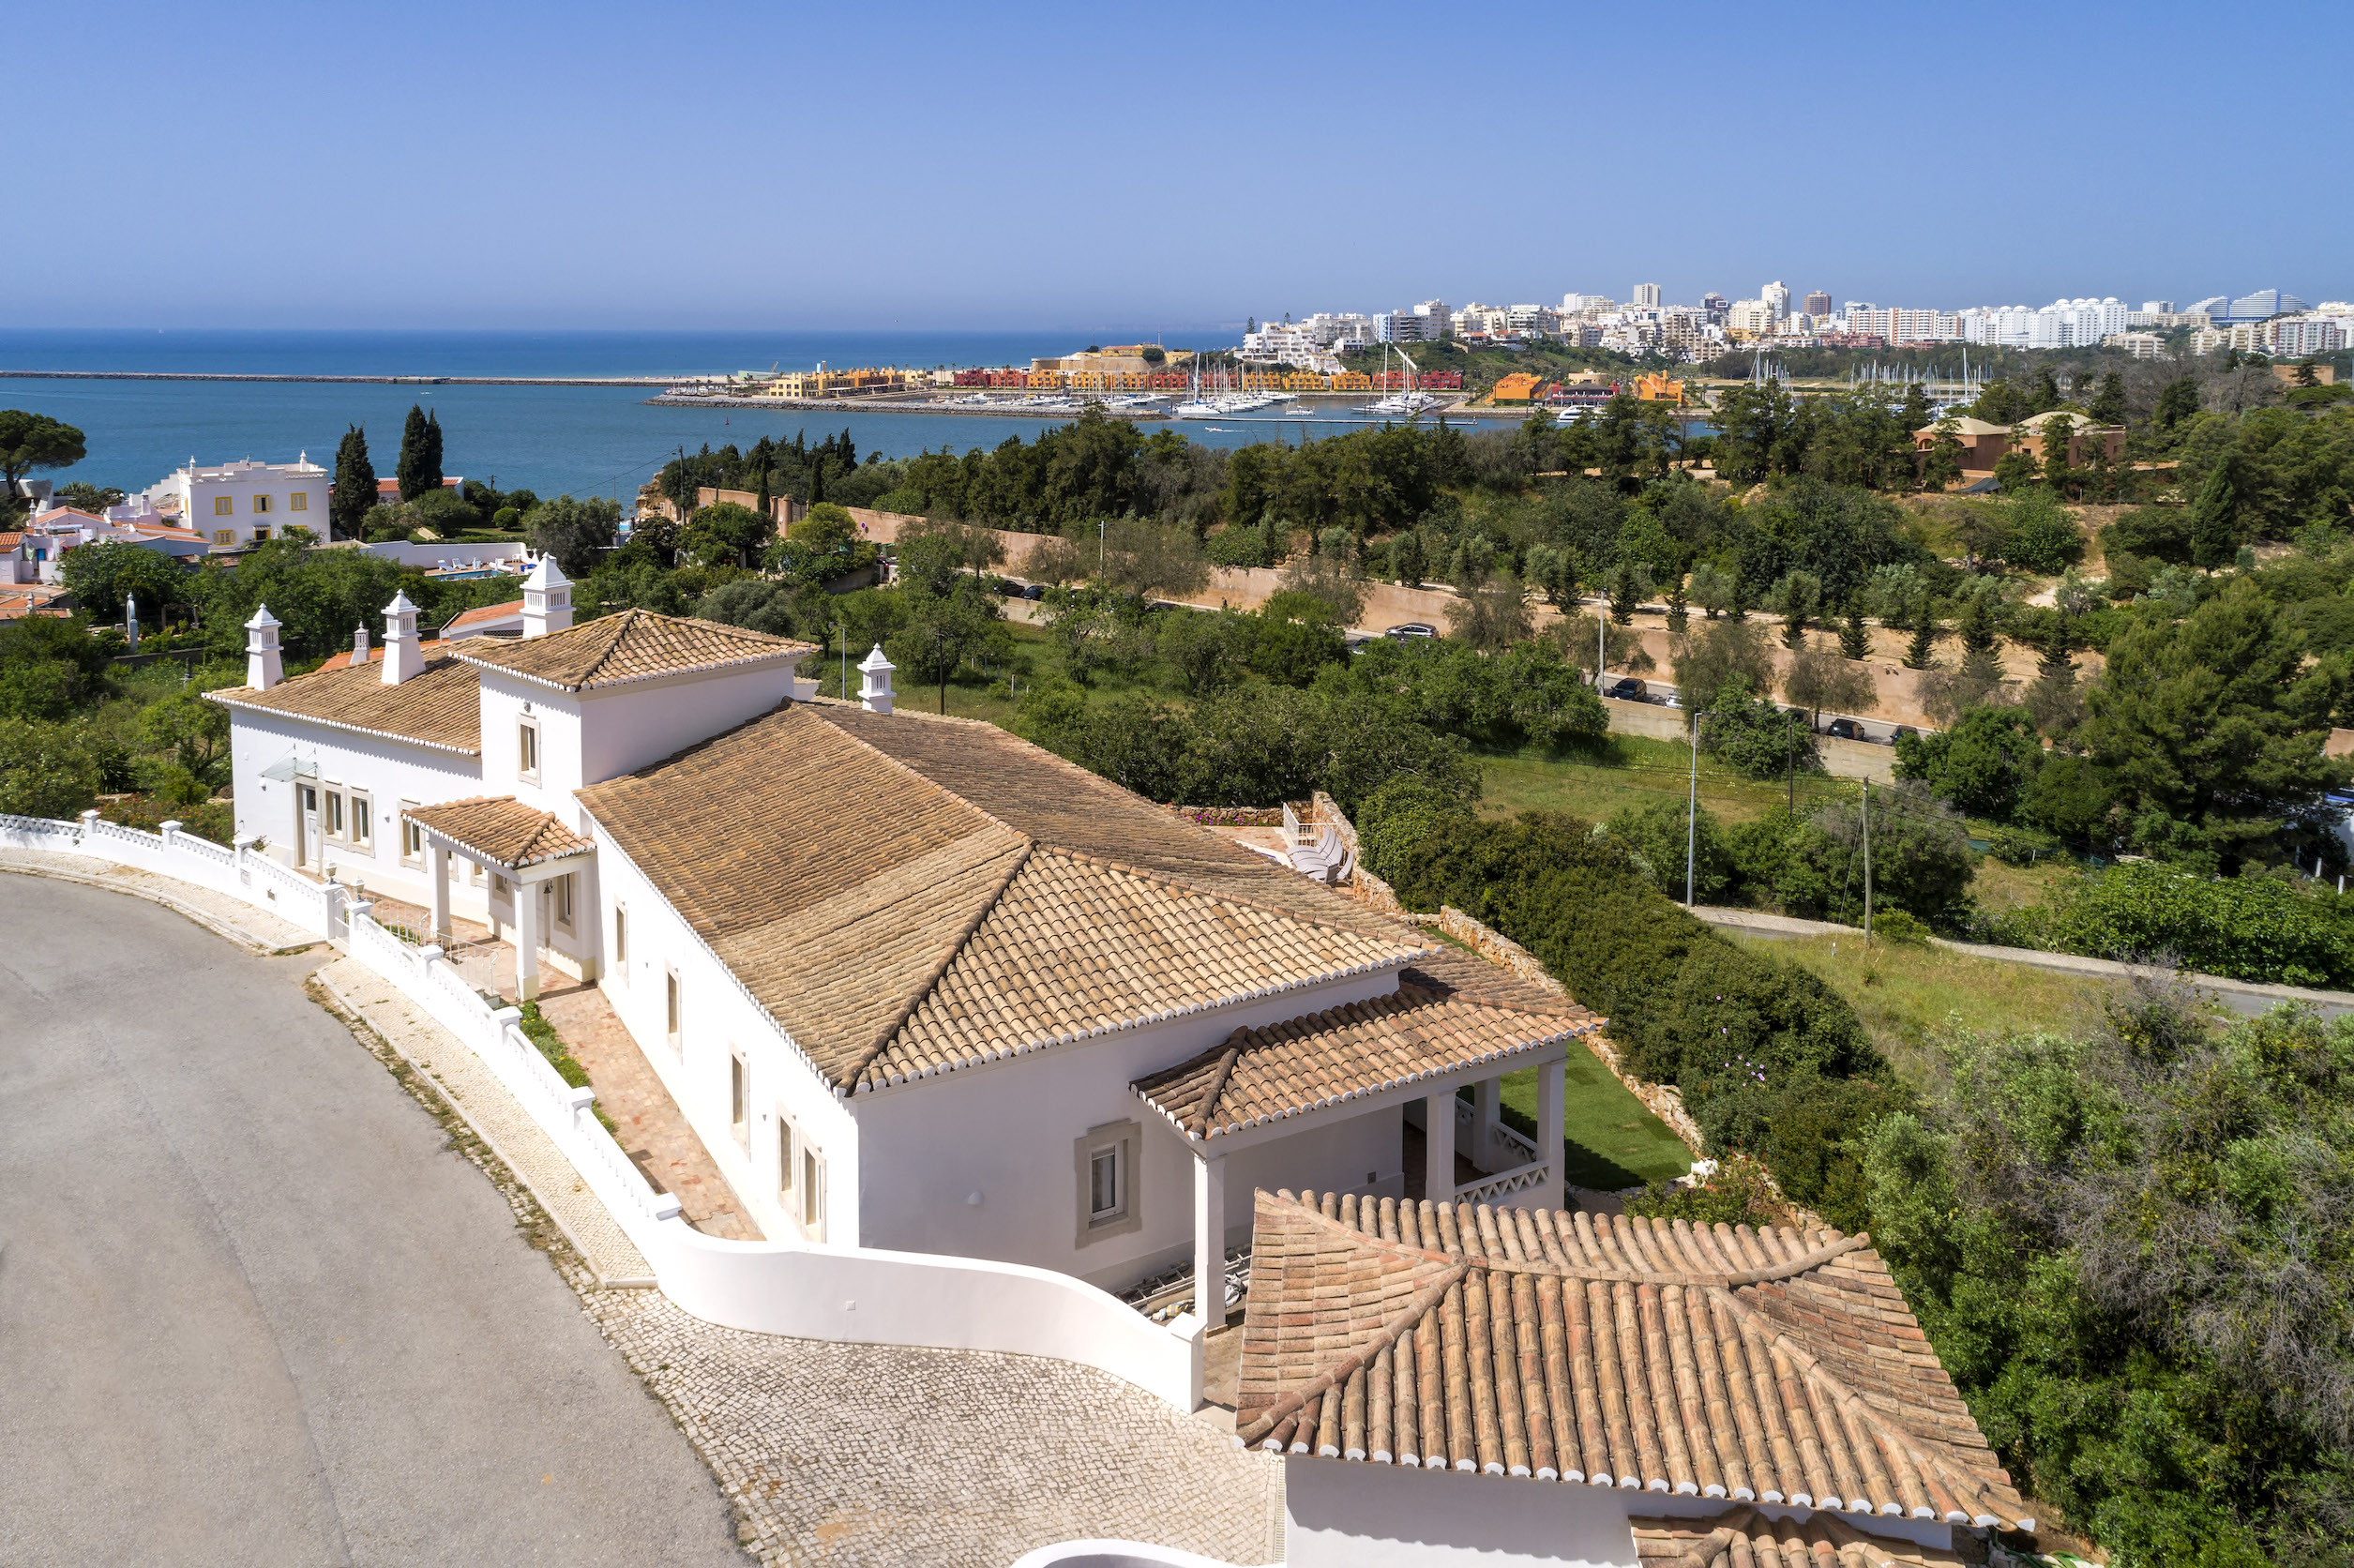 Португалия недвижимость цены бессрочный вид на жительство в германии